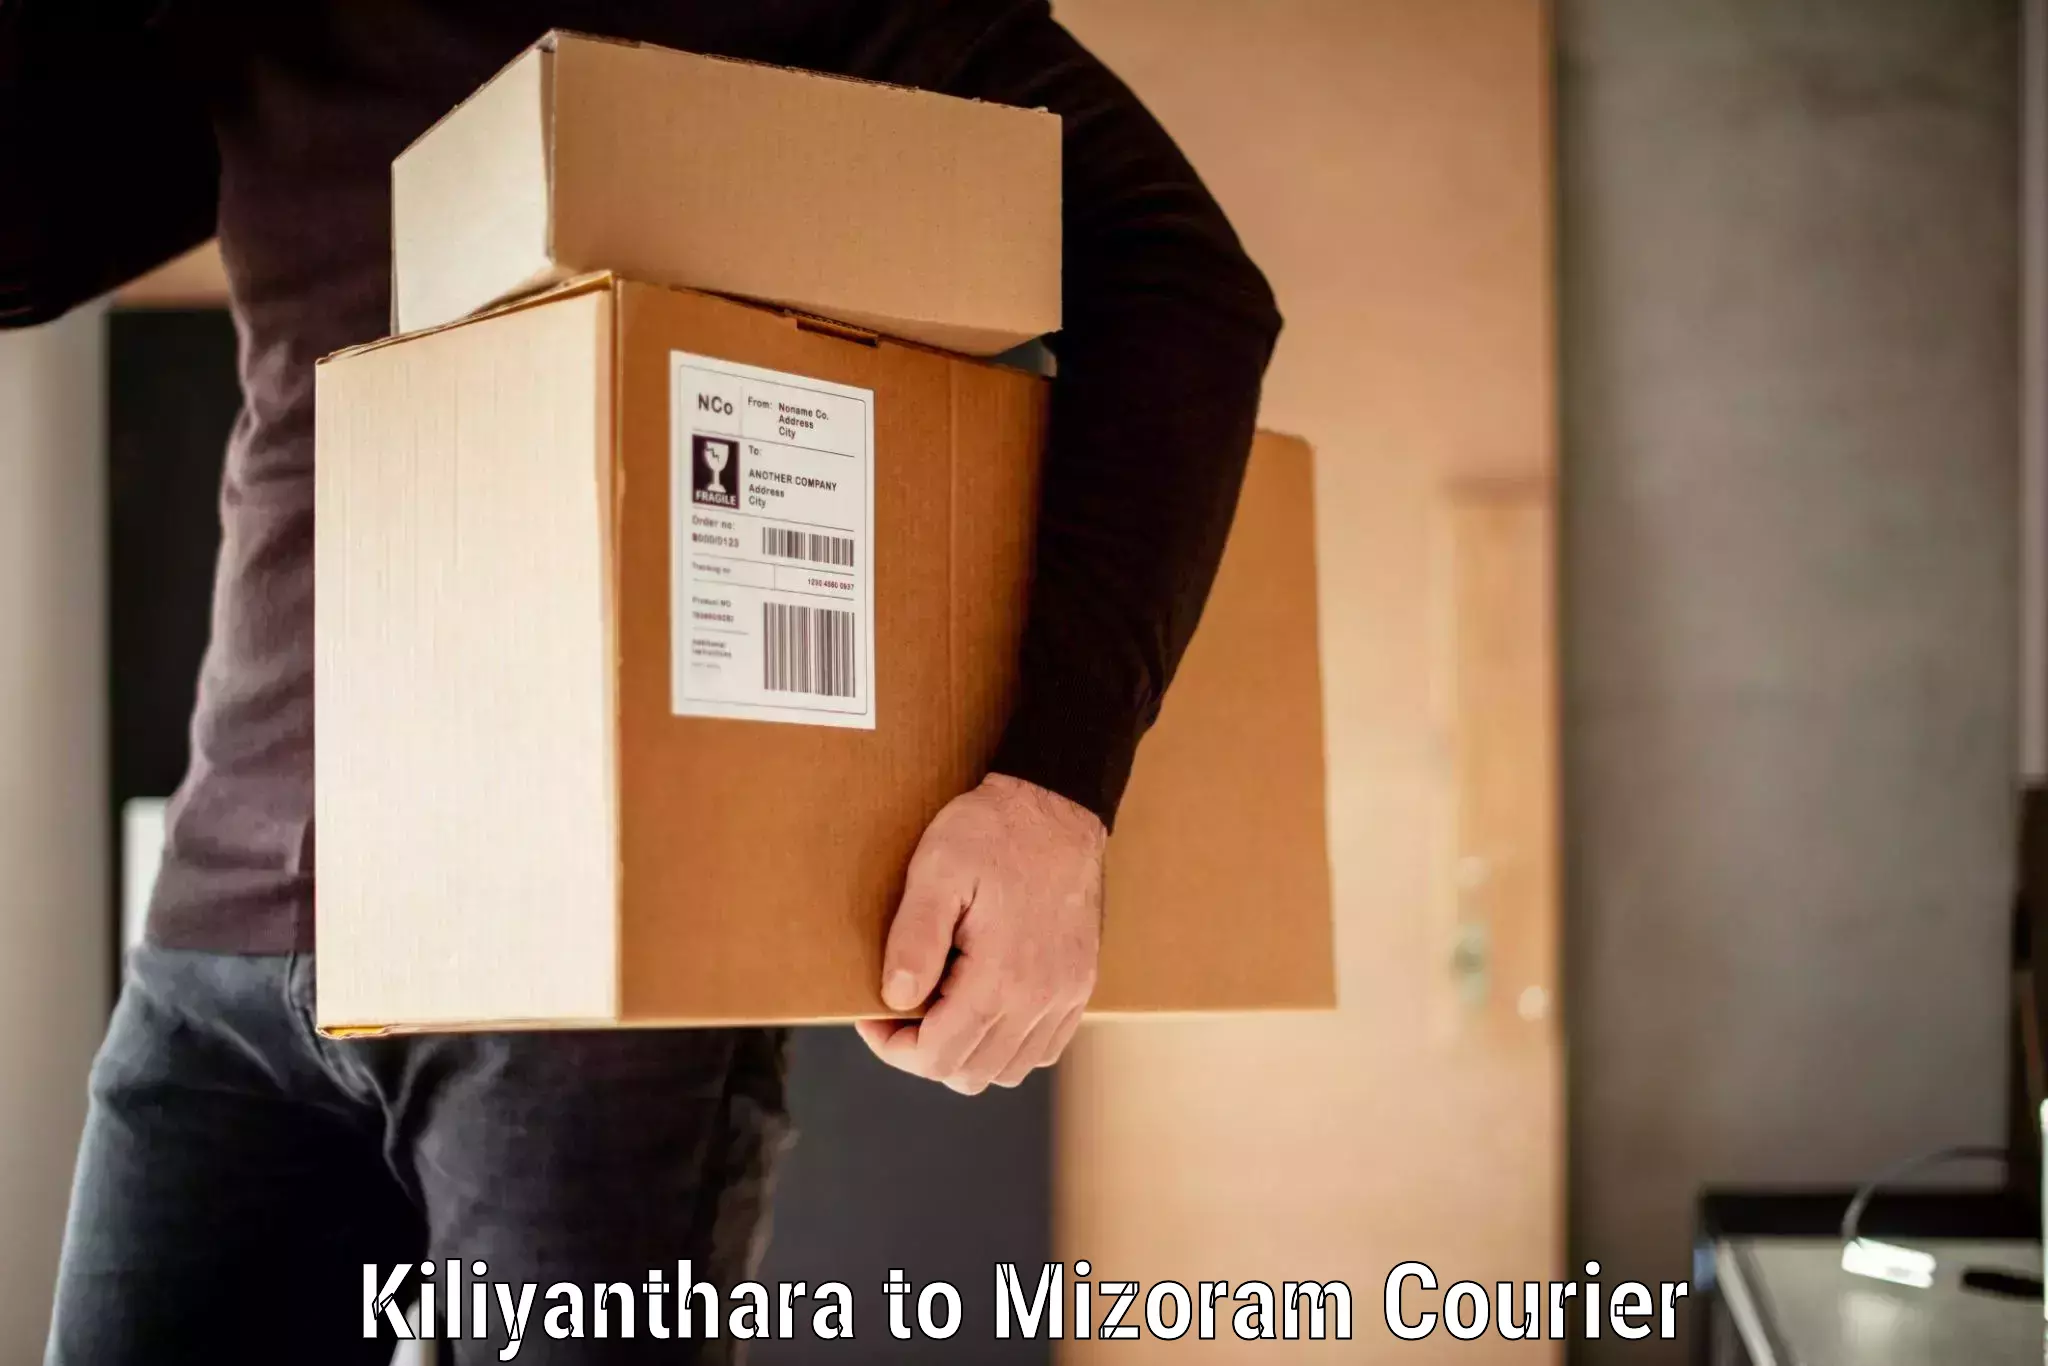 Baggage shipping optimization Kiliyanthara to Mizoram